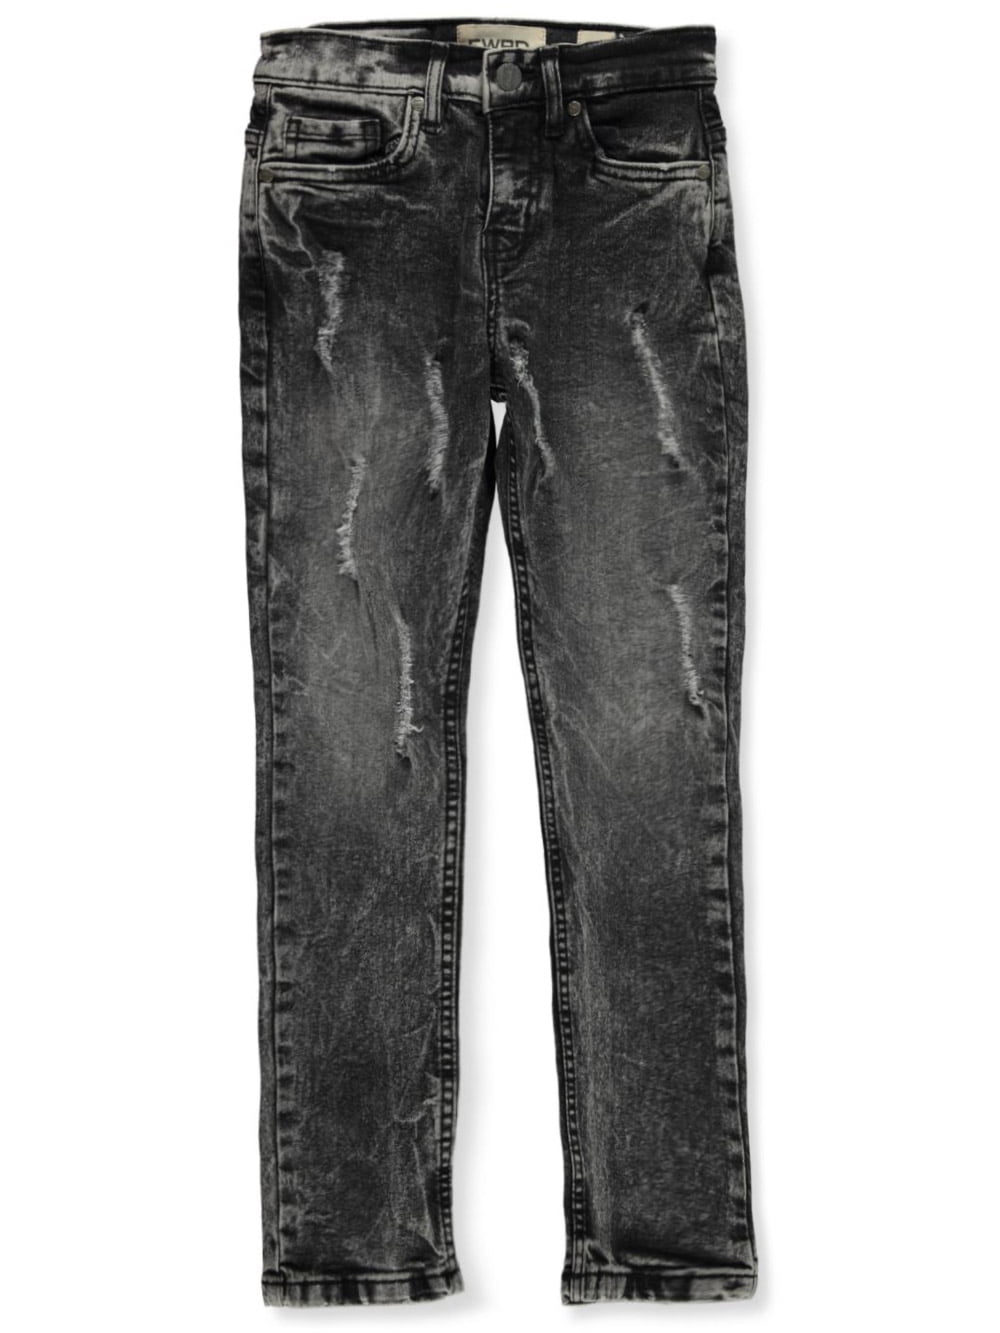 Fwrd Boys' Regular Jeans - Wash Black, 20 (Big Boys) - Walmart.com